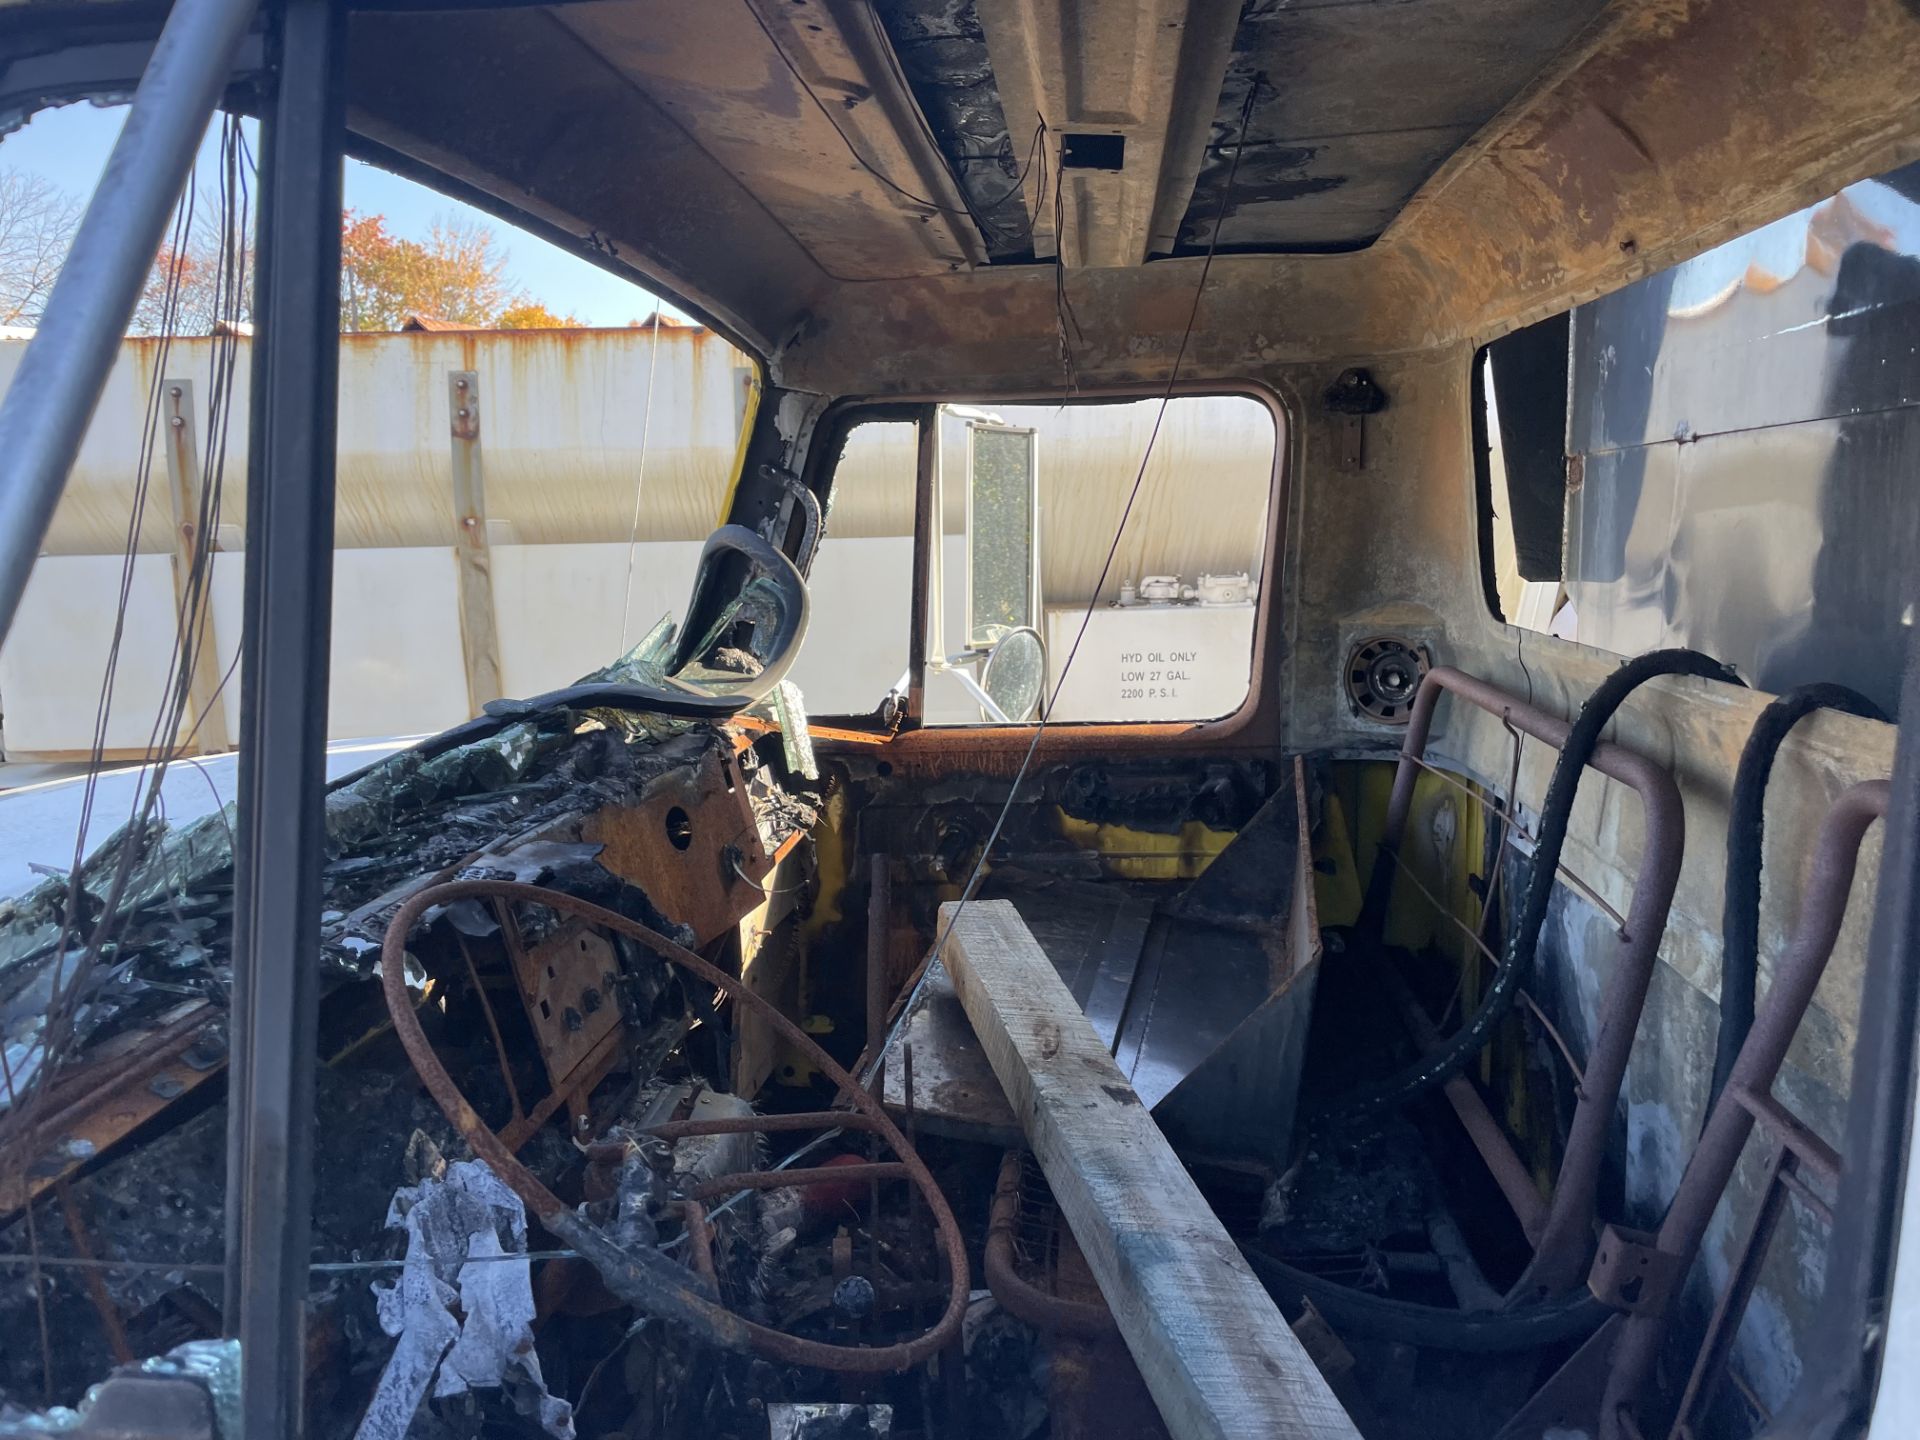 International 4700 Dump Body w/ Warren Sander, 6 wheel, 10' Dump, Parts Truck, Fire Damage w/ Plow - Image 6 of 6